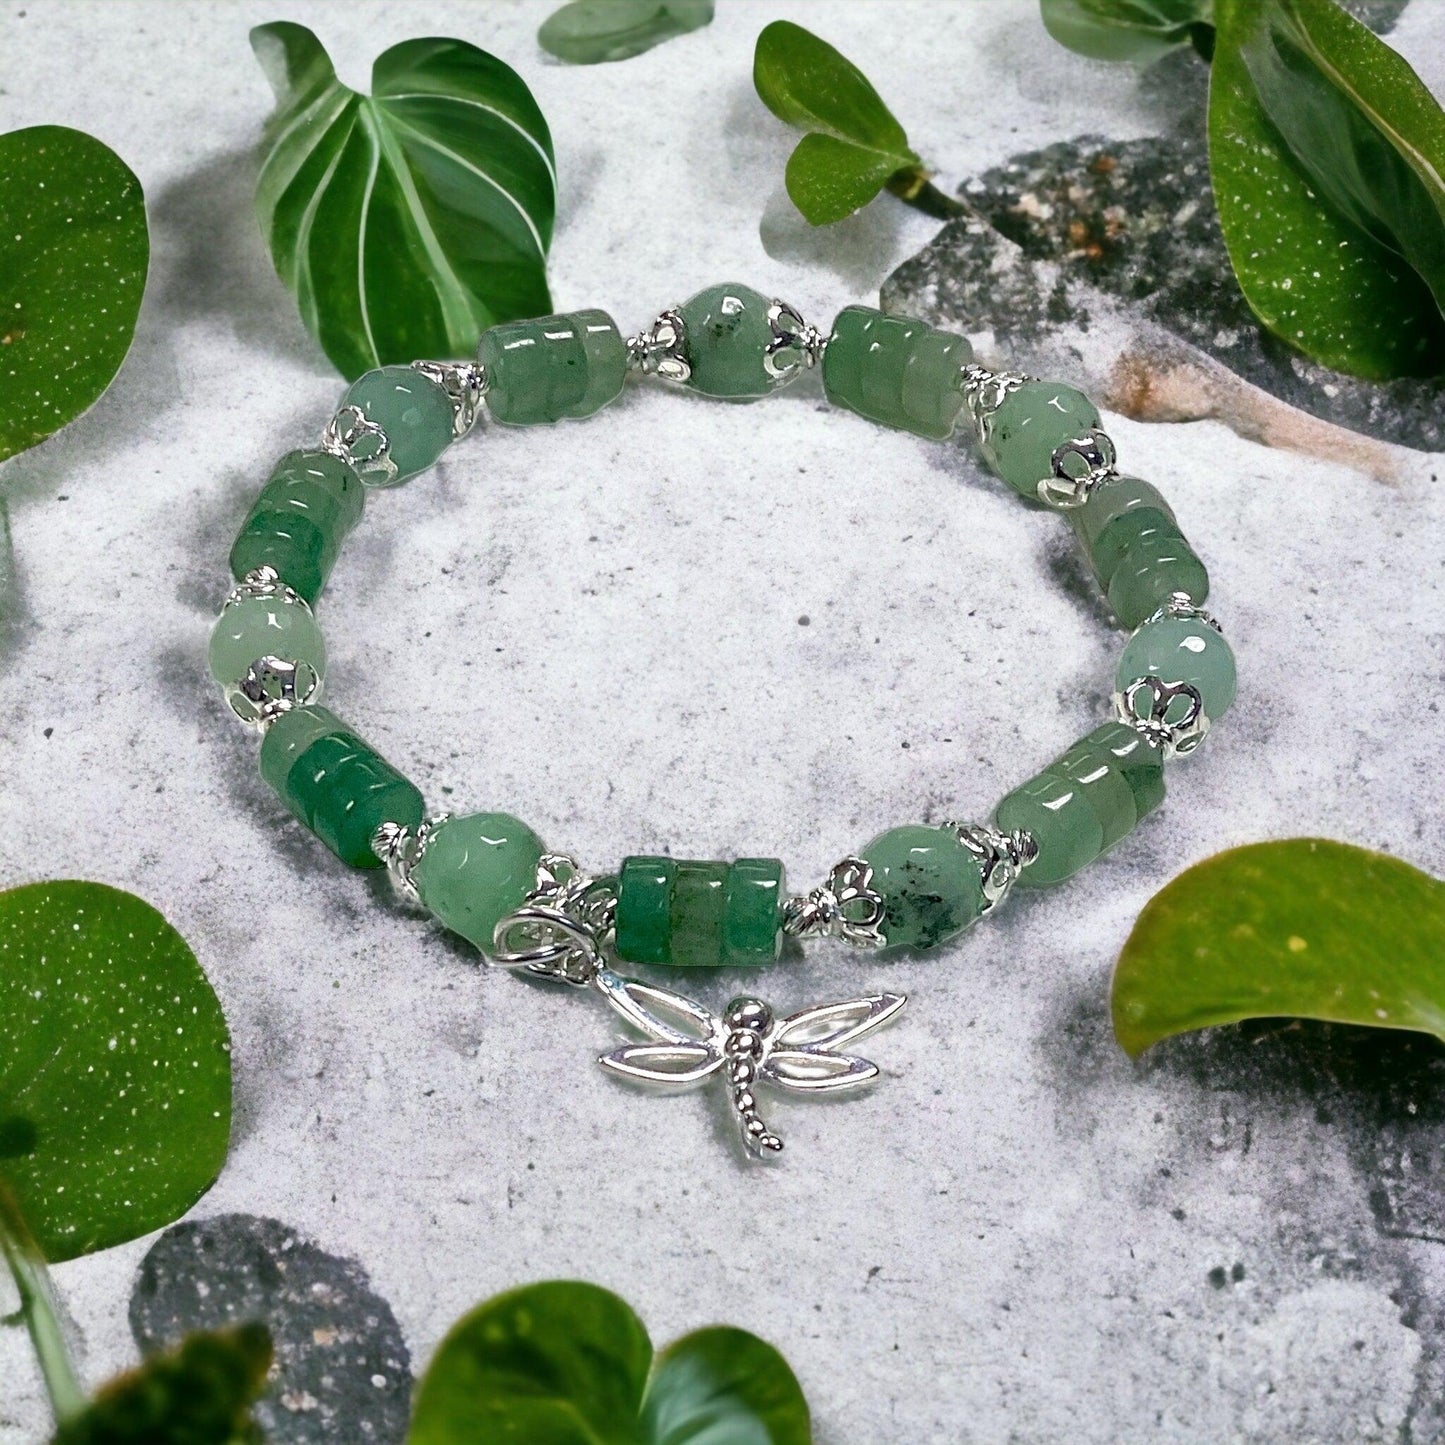 DIY Bracelet Kit - Jade Dragonfly Bracelet - Too Cute Beads